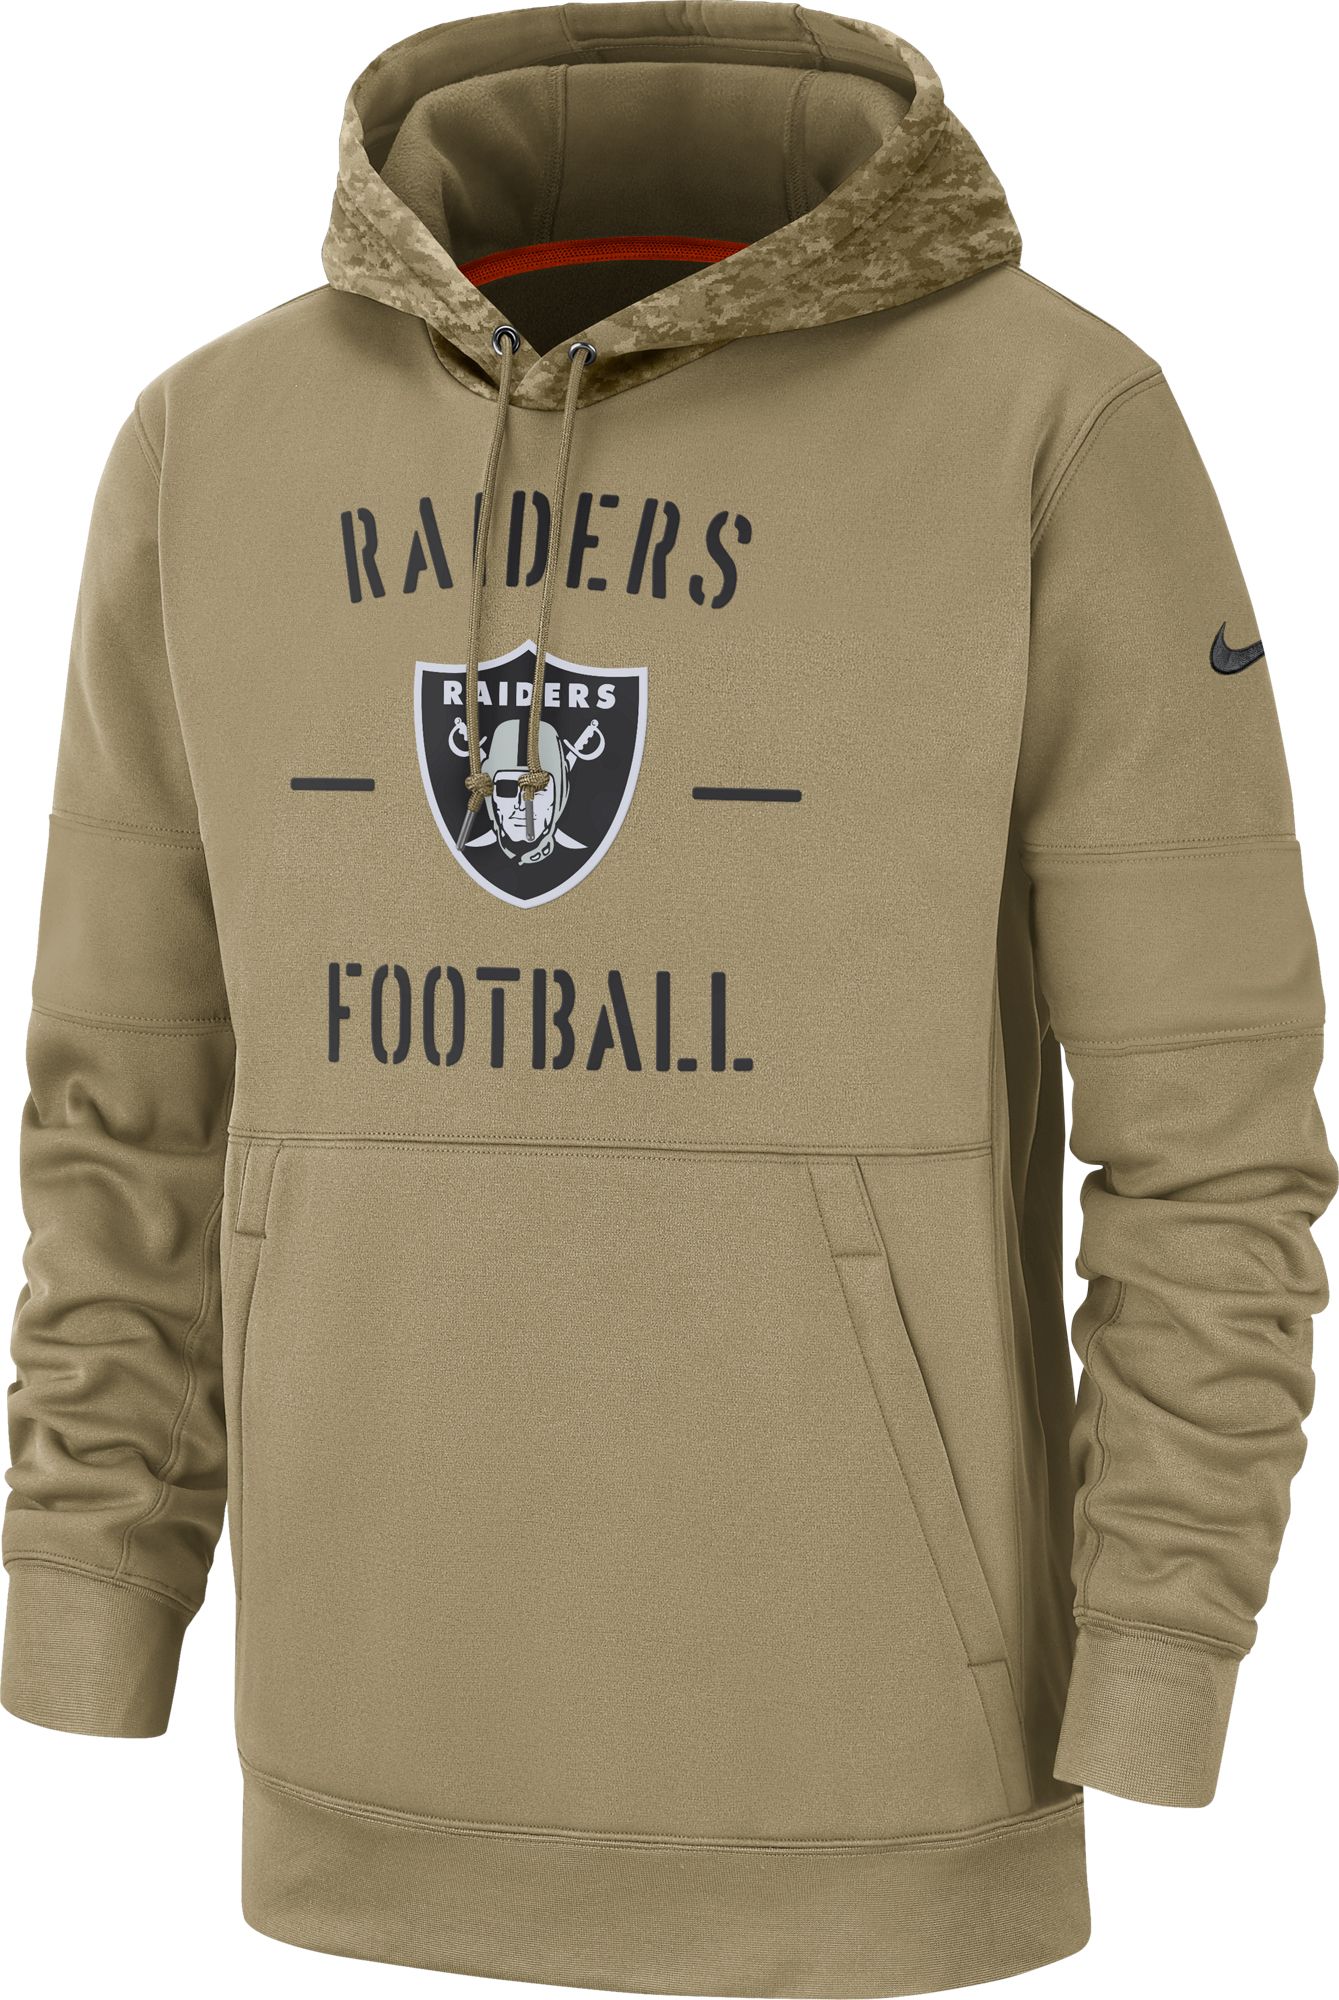 raiders camo hoodie